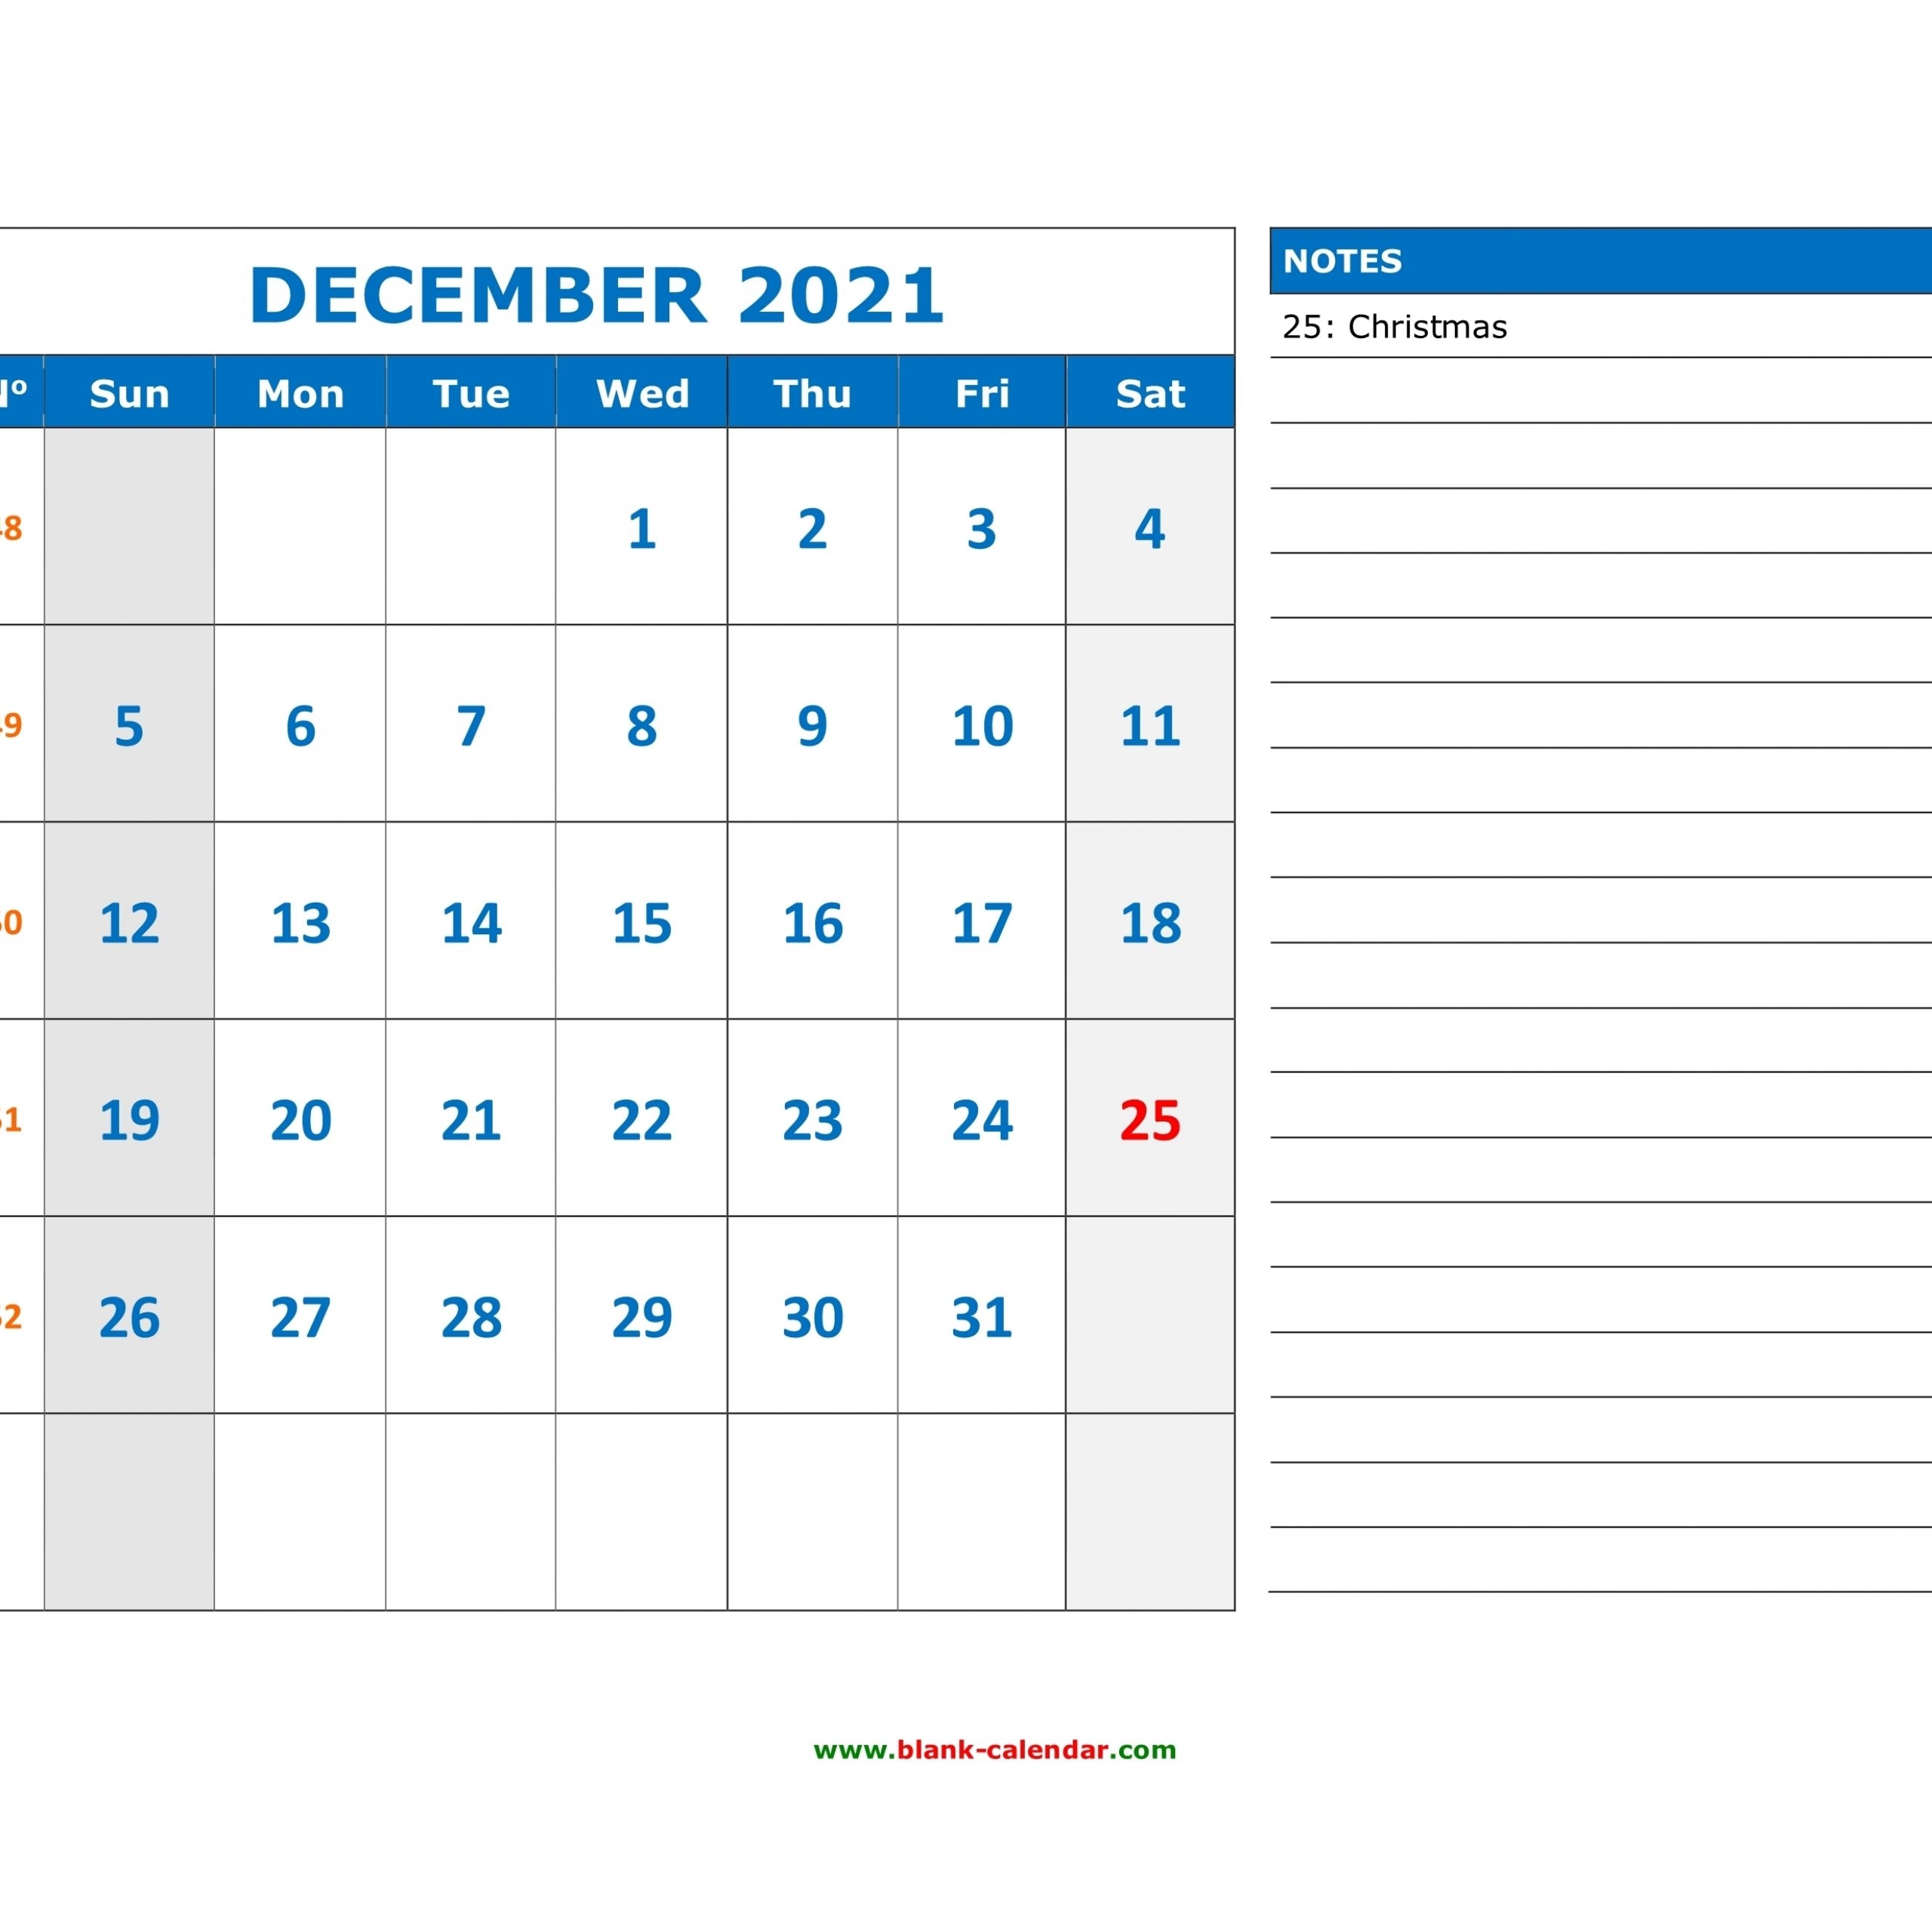 Calendar 2021 December Notes | Get Free Calendar December 2021 Calendar Quiz